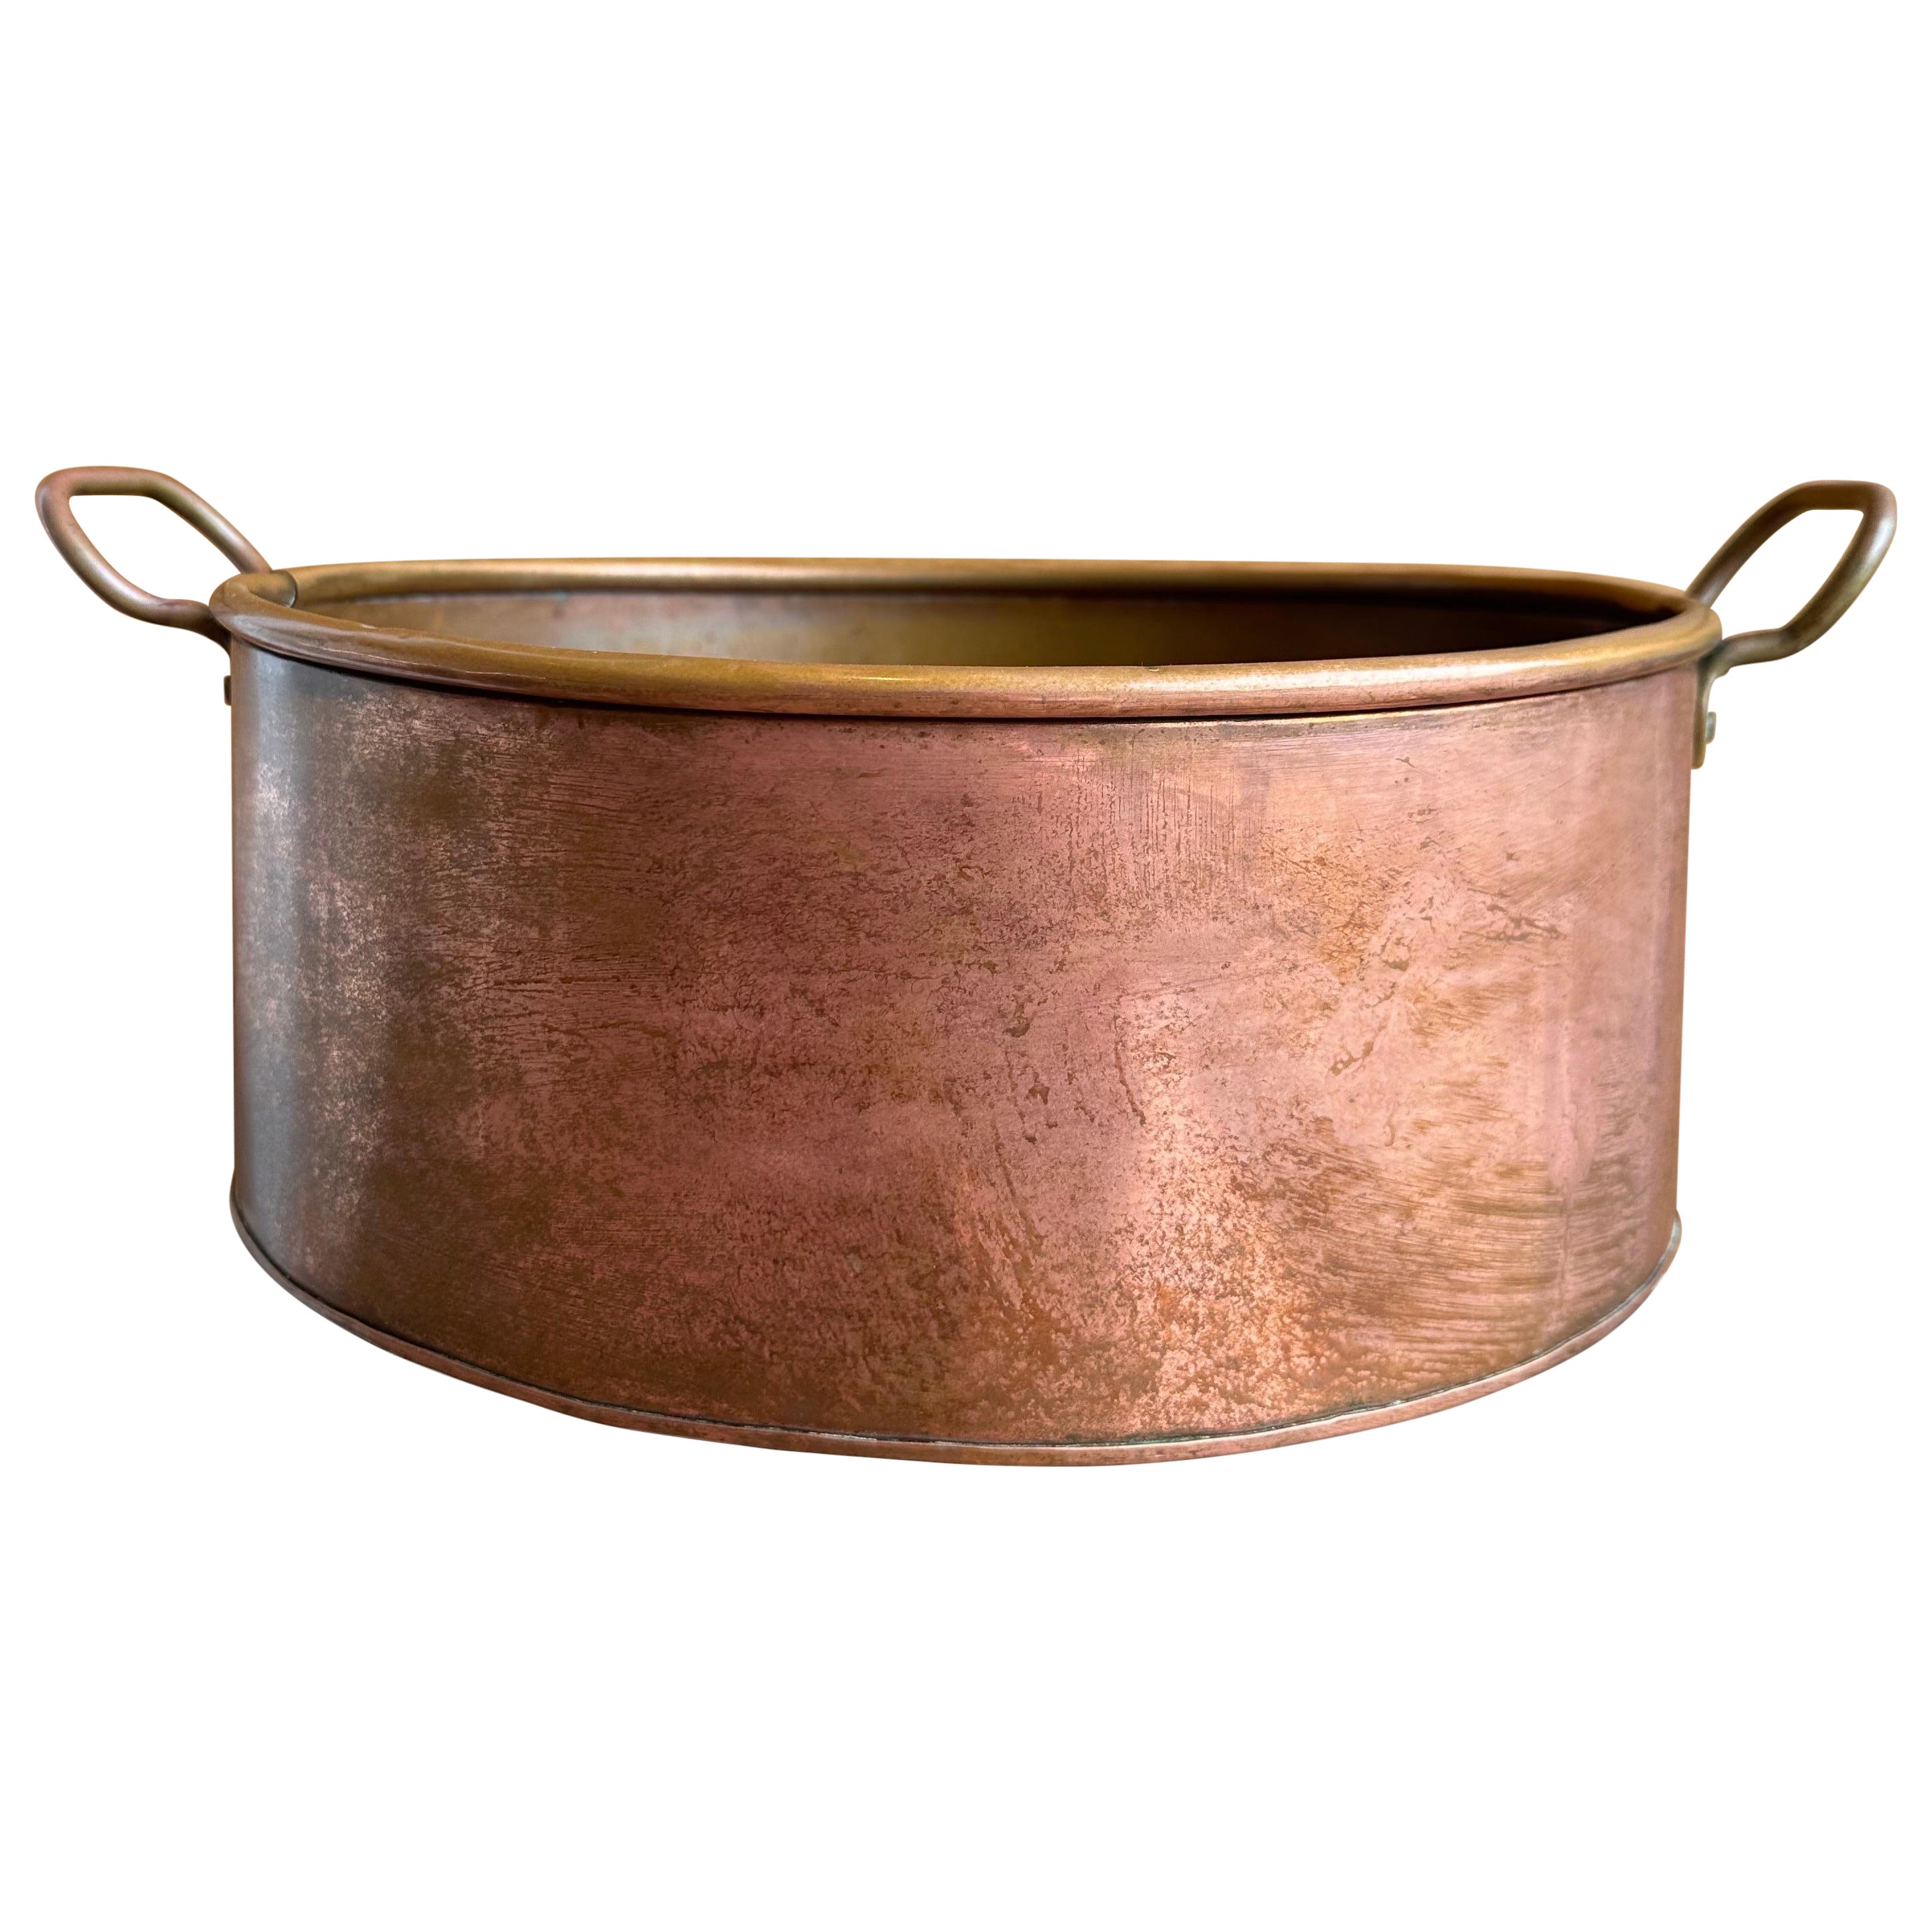 Grand pot de cuisine victorien en cuivre, 19ème siècle 